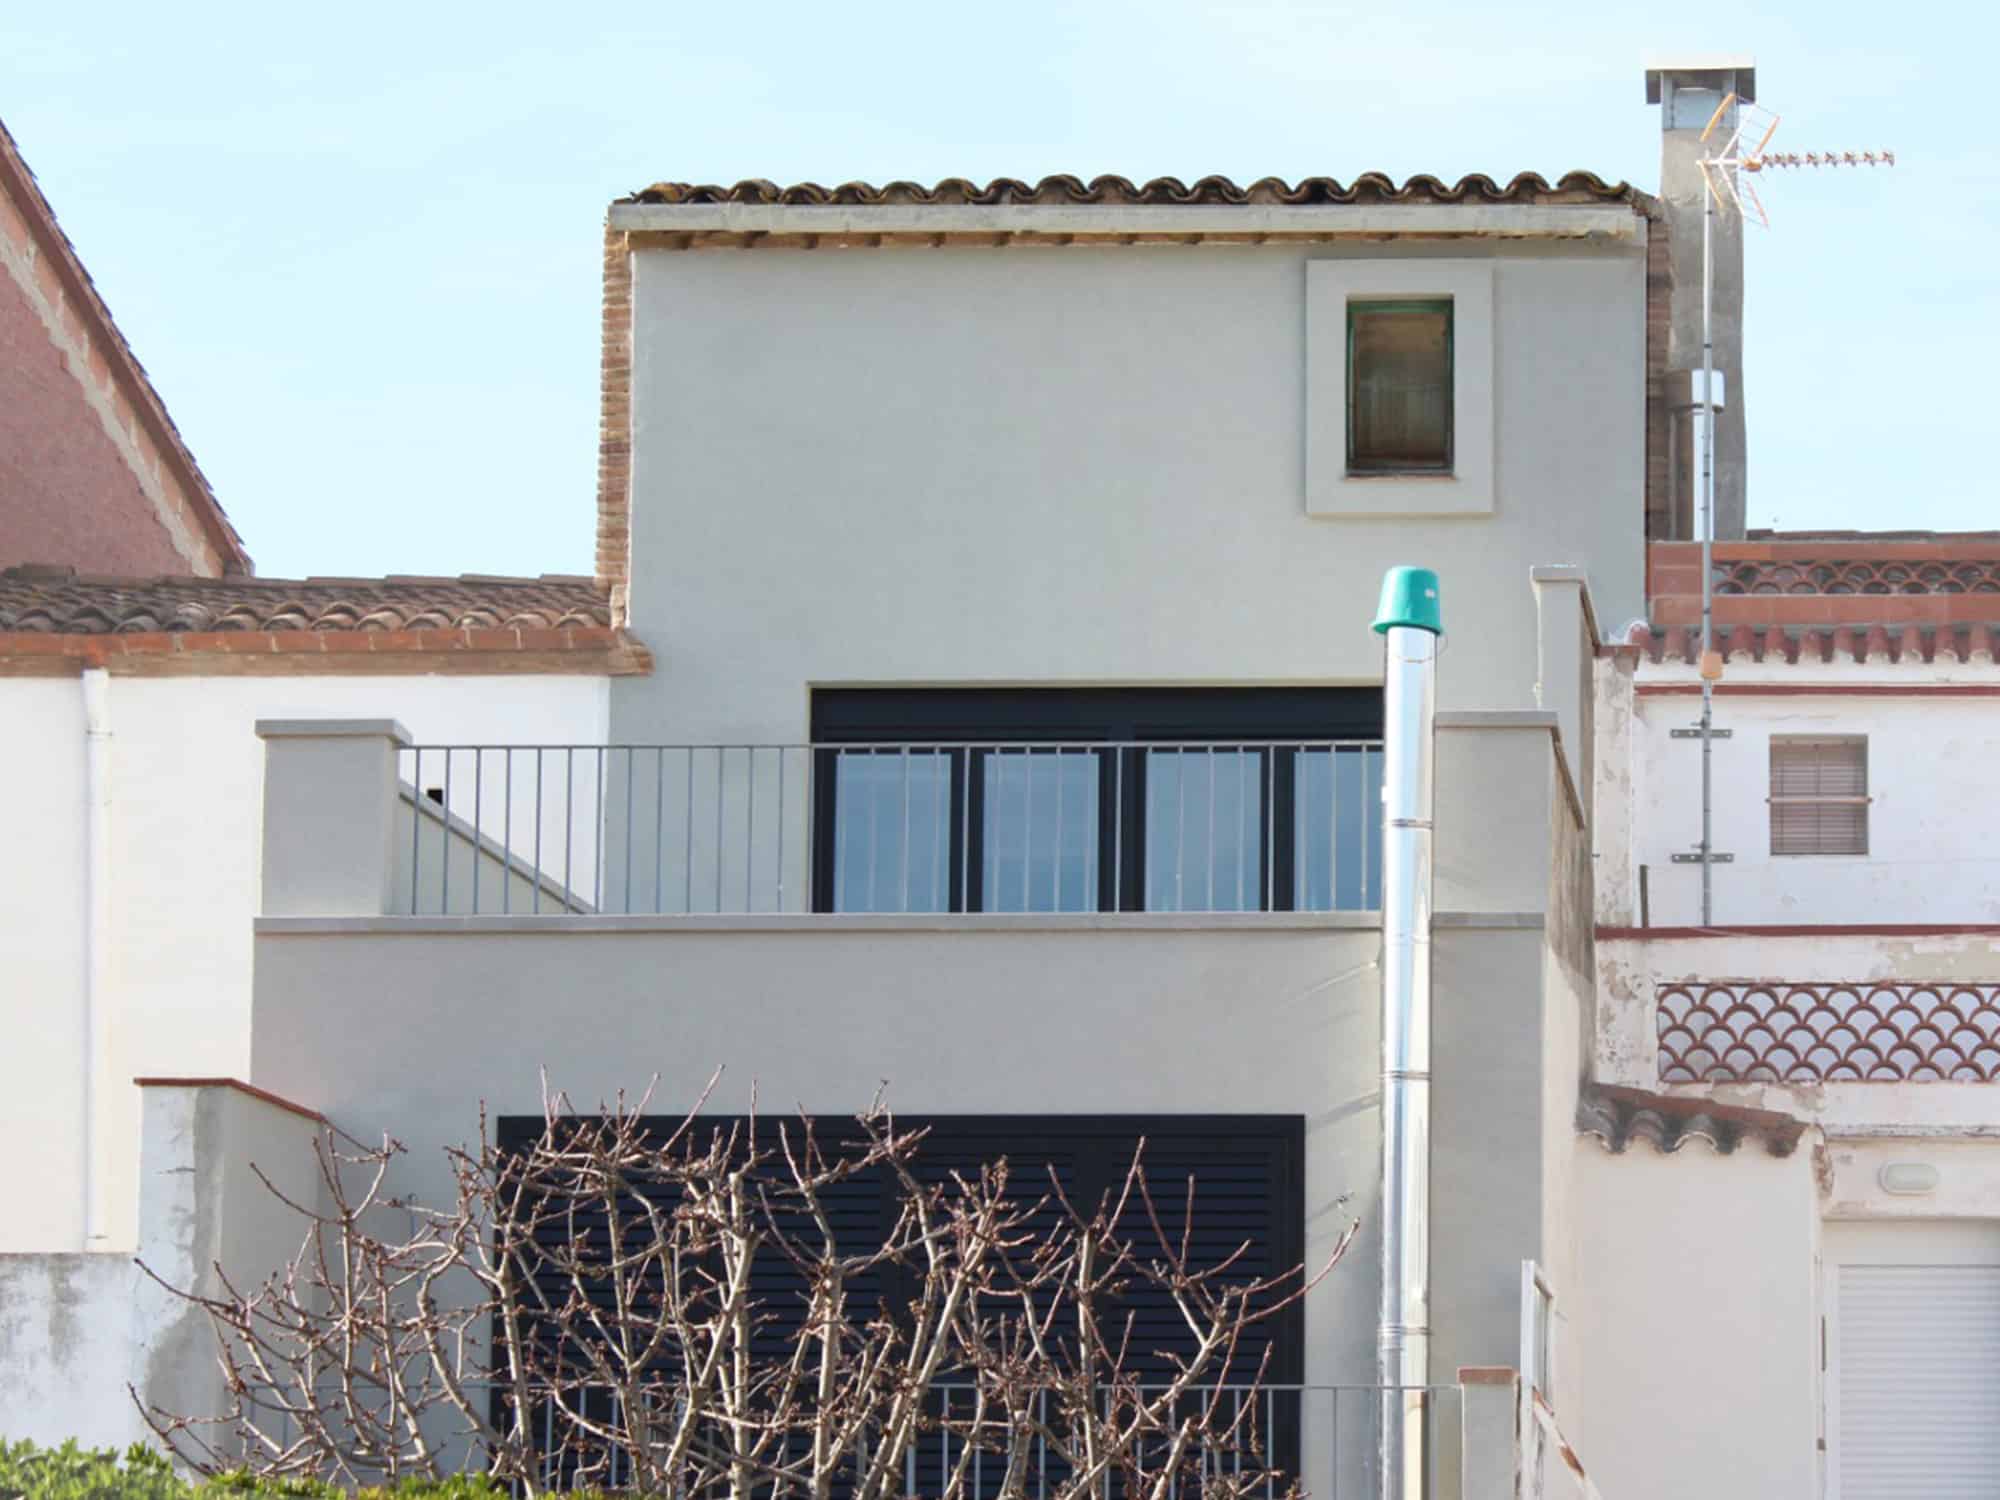 Projecte de rehabilitació integral d’habitatge unifamiliar entre mitgeres a Vallbona d’Anoia